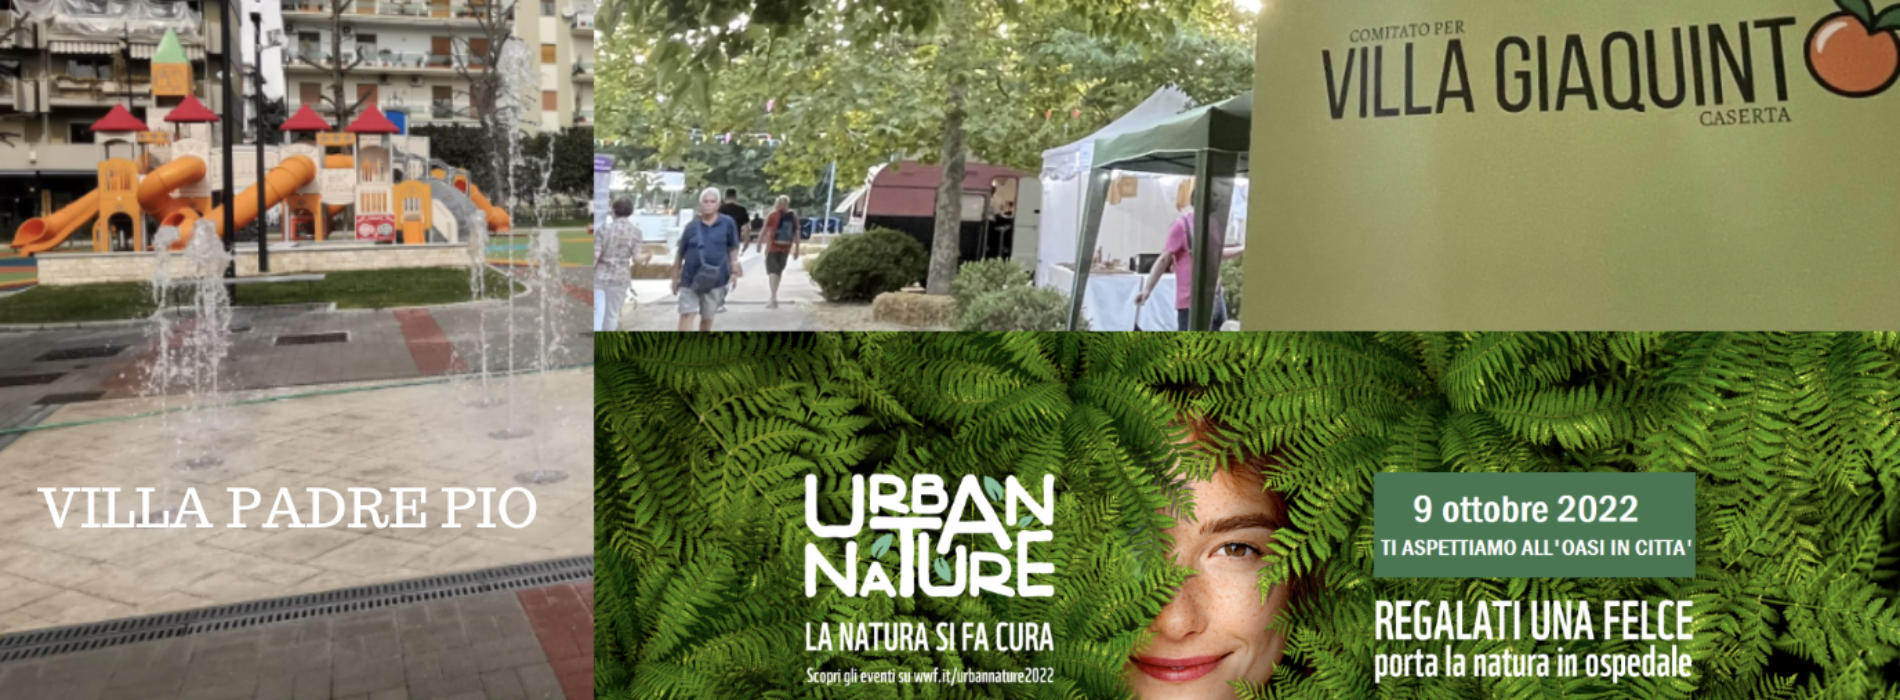 Urban Nature, la festa del Wwf fa tappa anche a Caserta